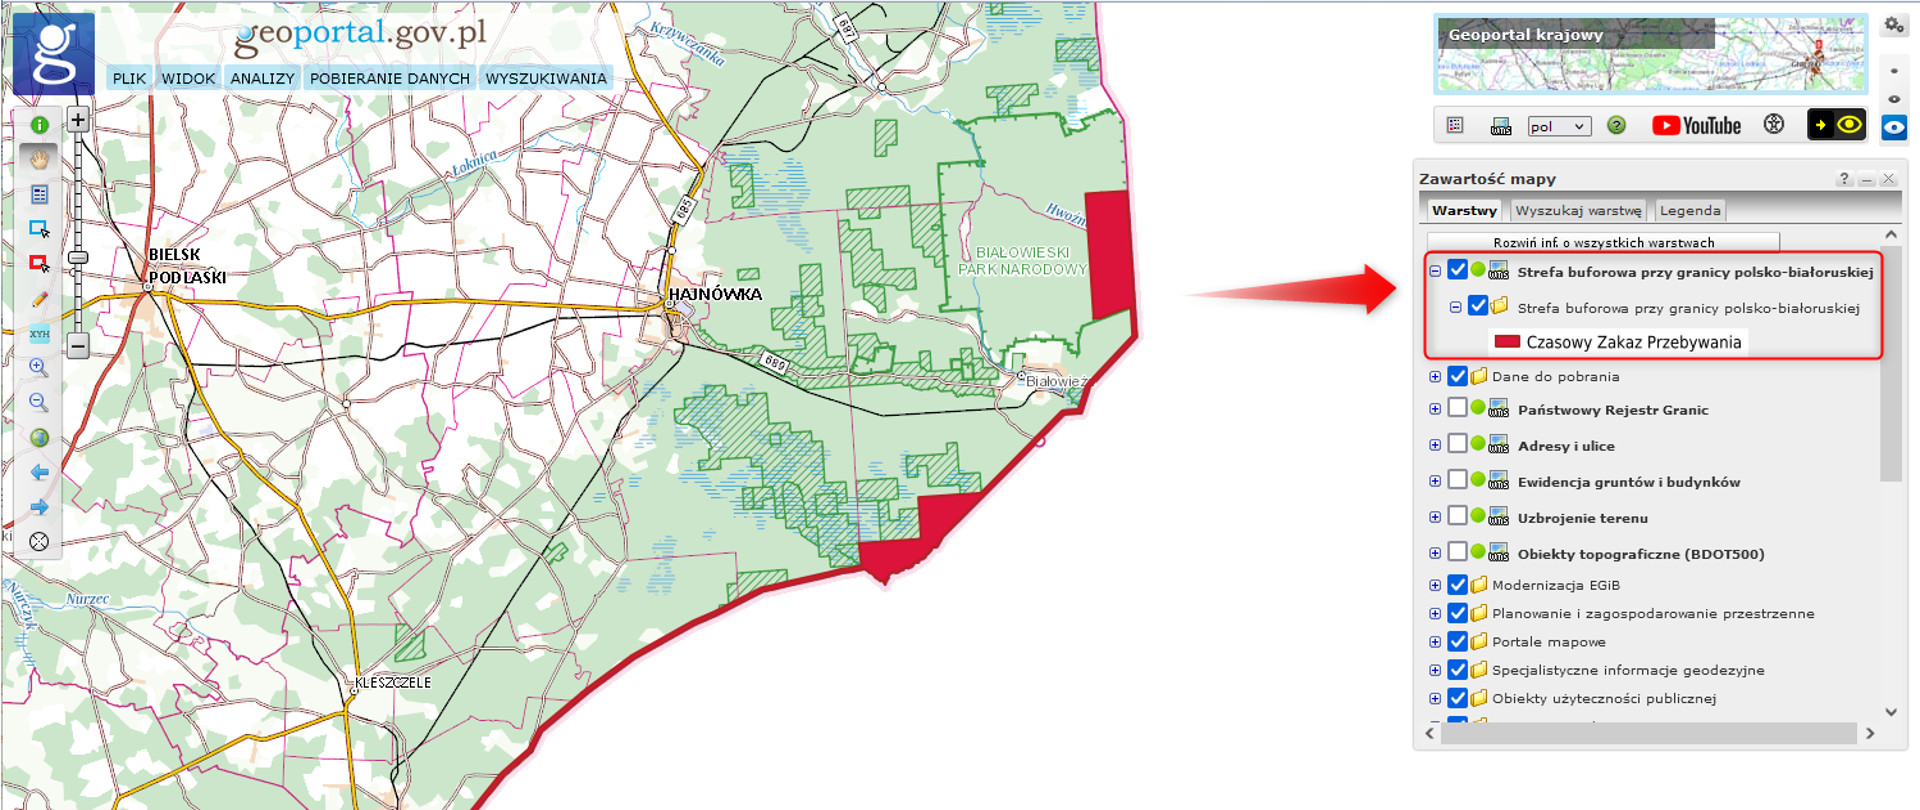 Ilustracja przedstawia widok warstwy "Strefa buforowa przy granicy polsko-białoruskiej" wraz z jej lokalizacją w drzewku warstw serwisu geoportal.gov.pl